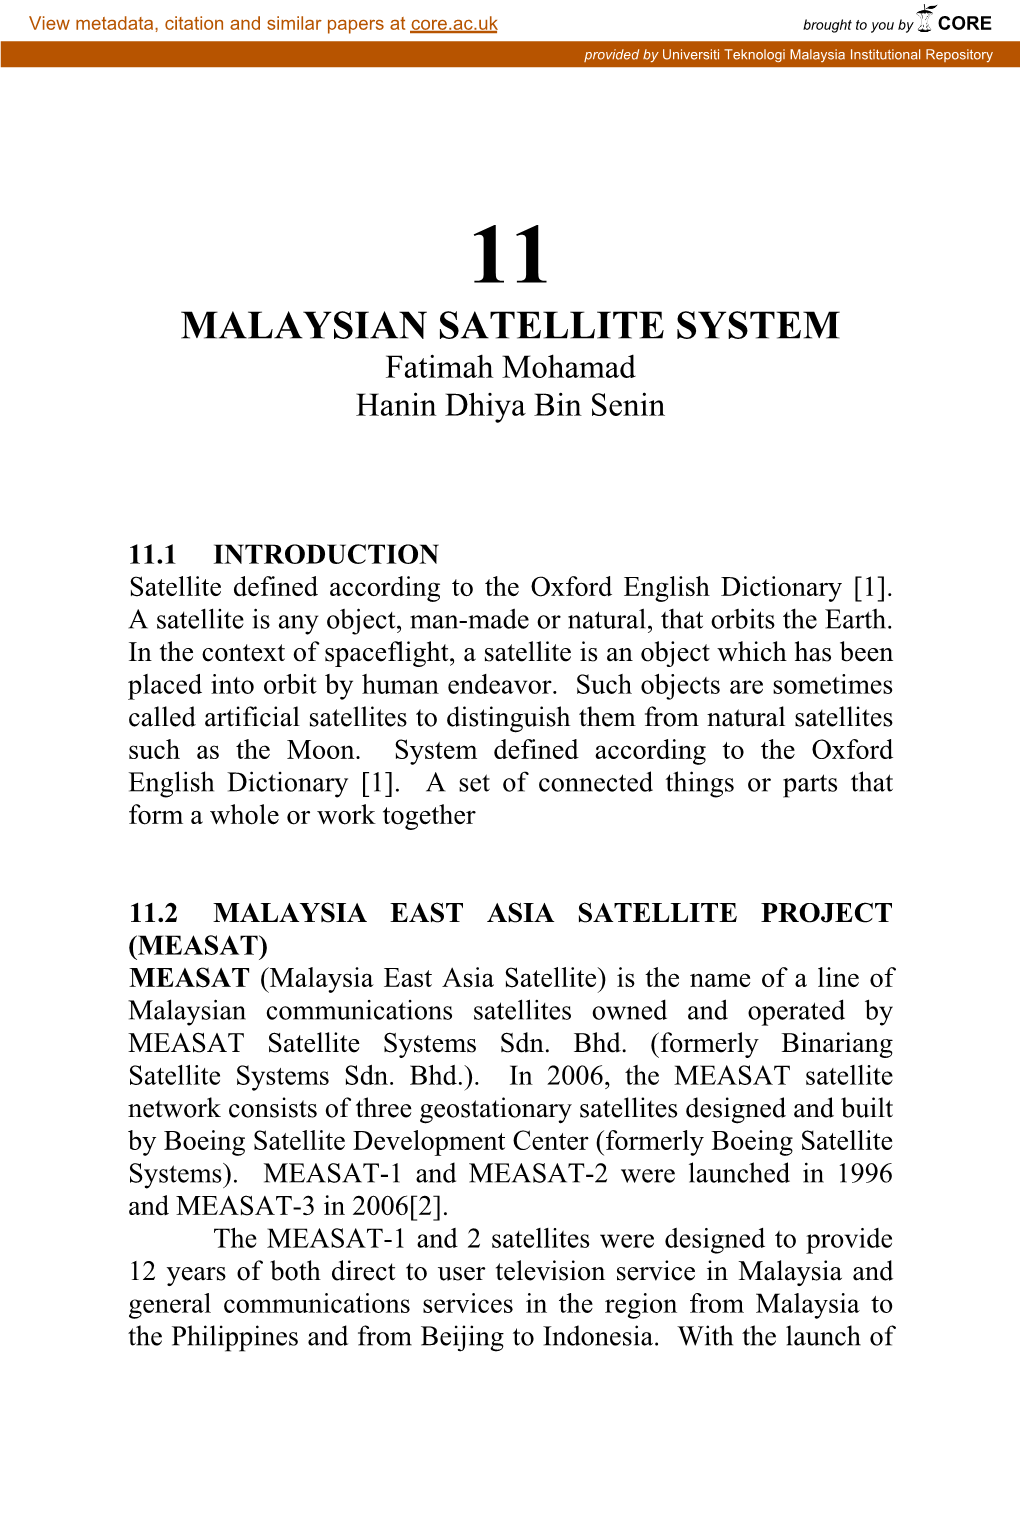 MALAYSIAN SATELLITE SYSTEM Fatimah Mohamad Hanin Dhiya Bin Senin